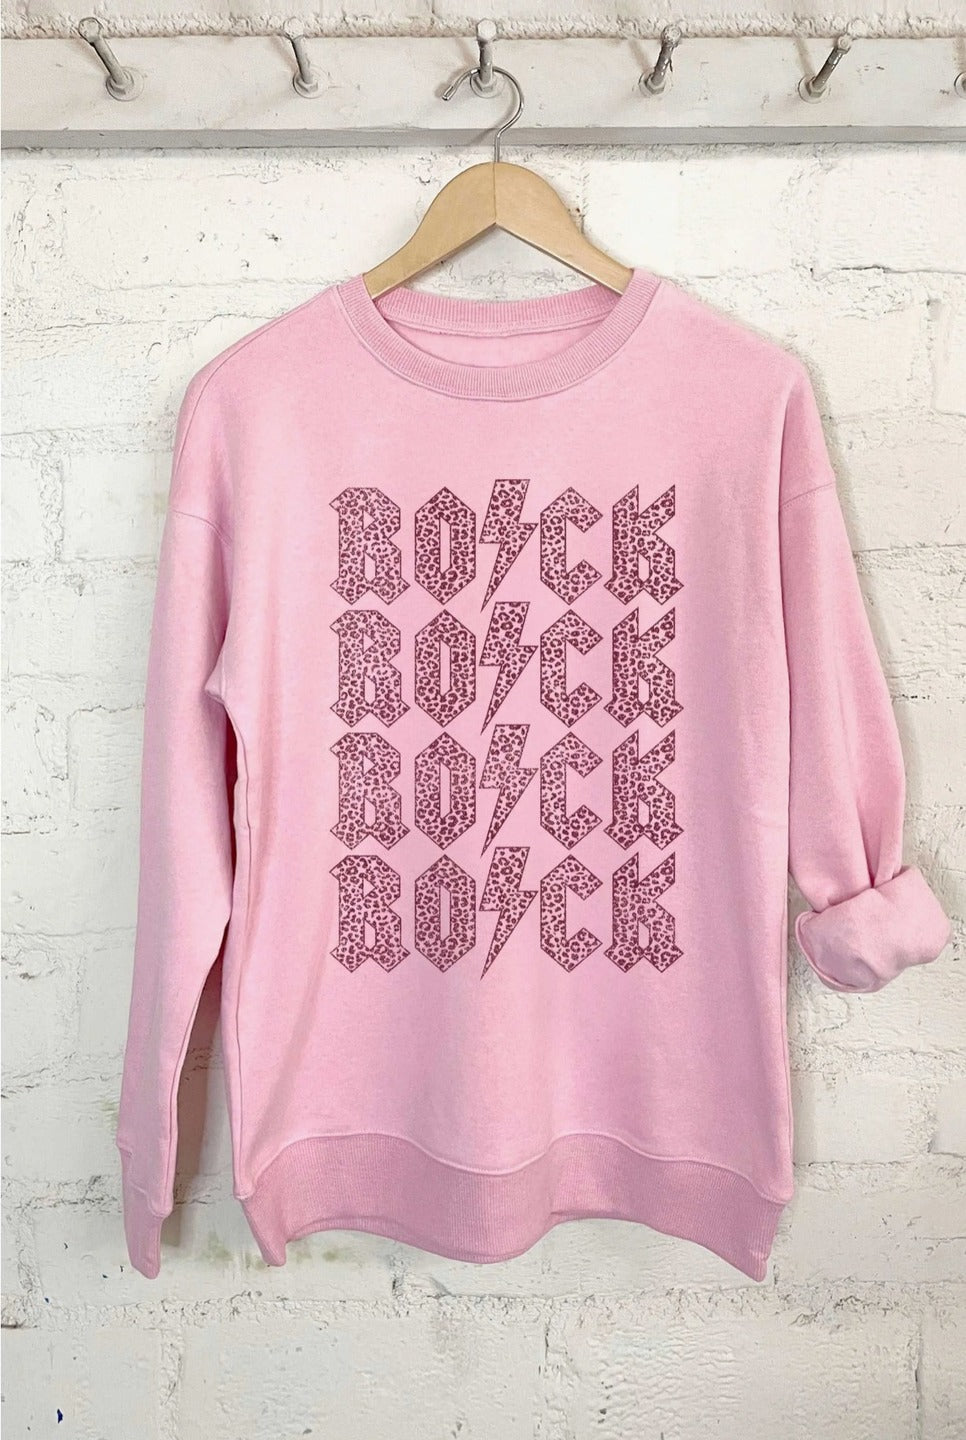 Leopard 'Rock' Sweatshirt - Candy Pink